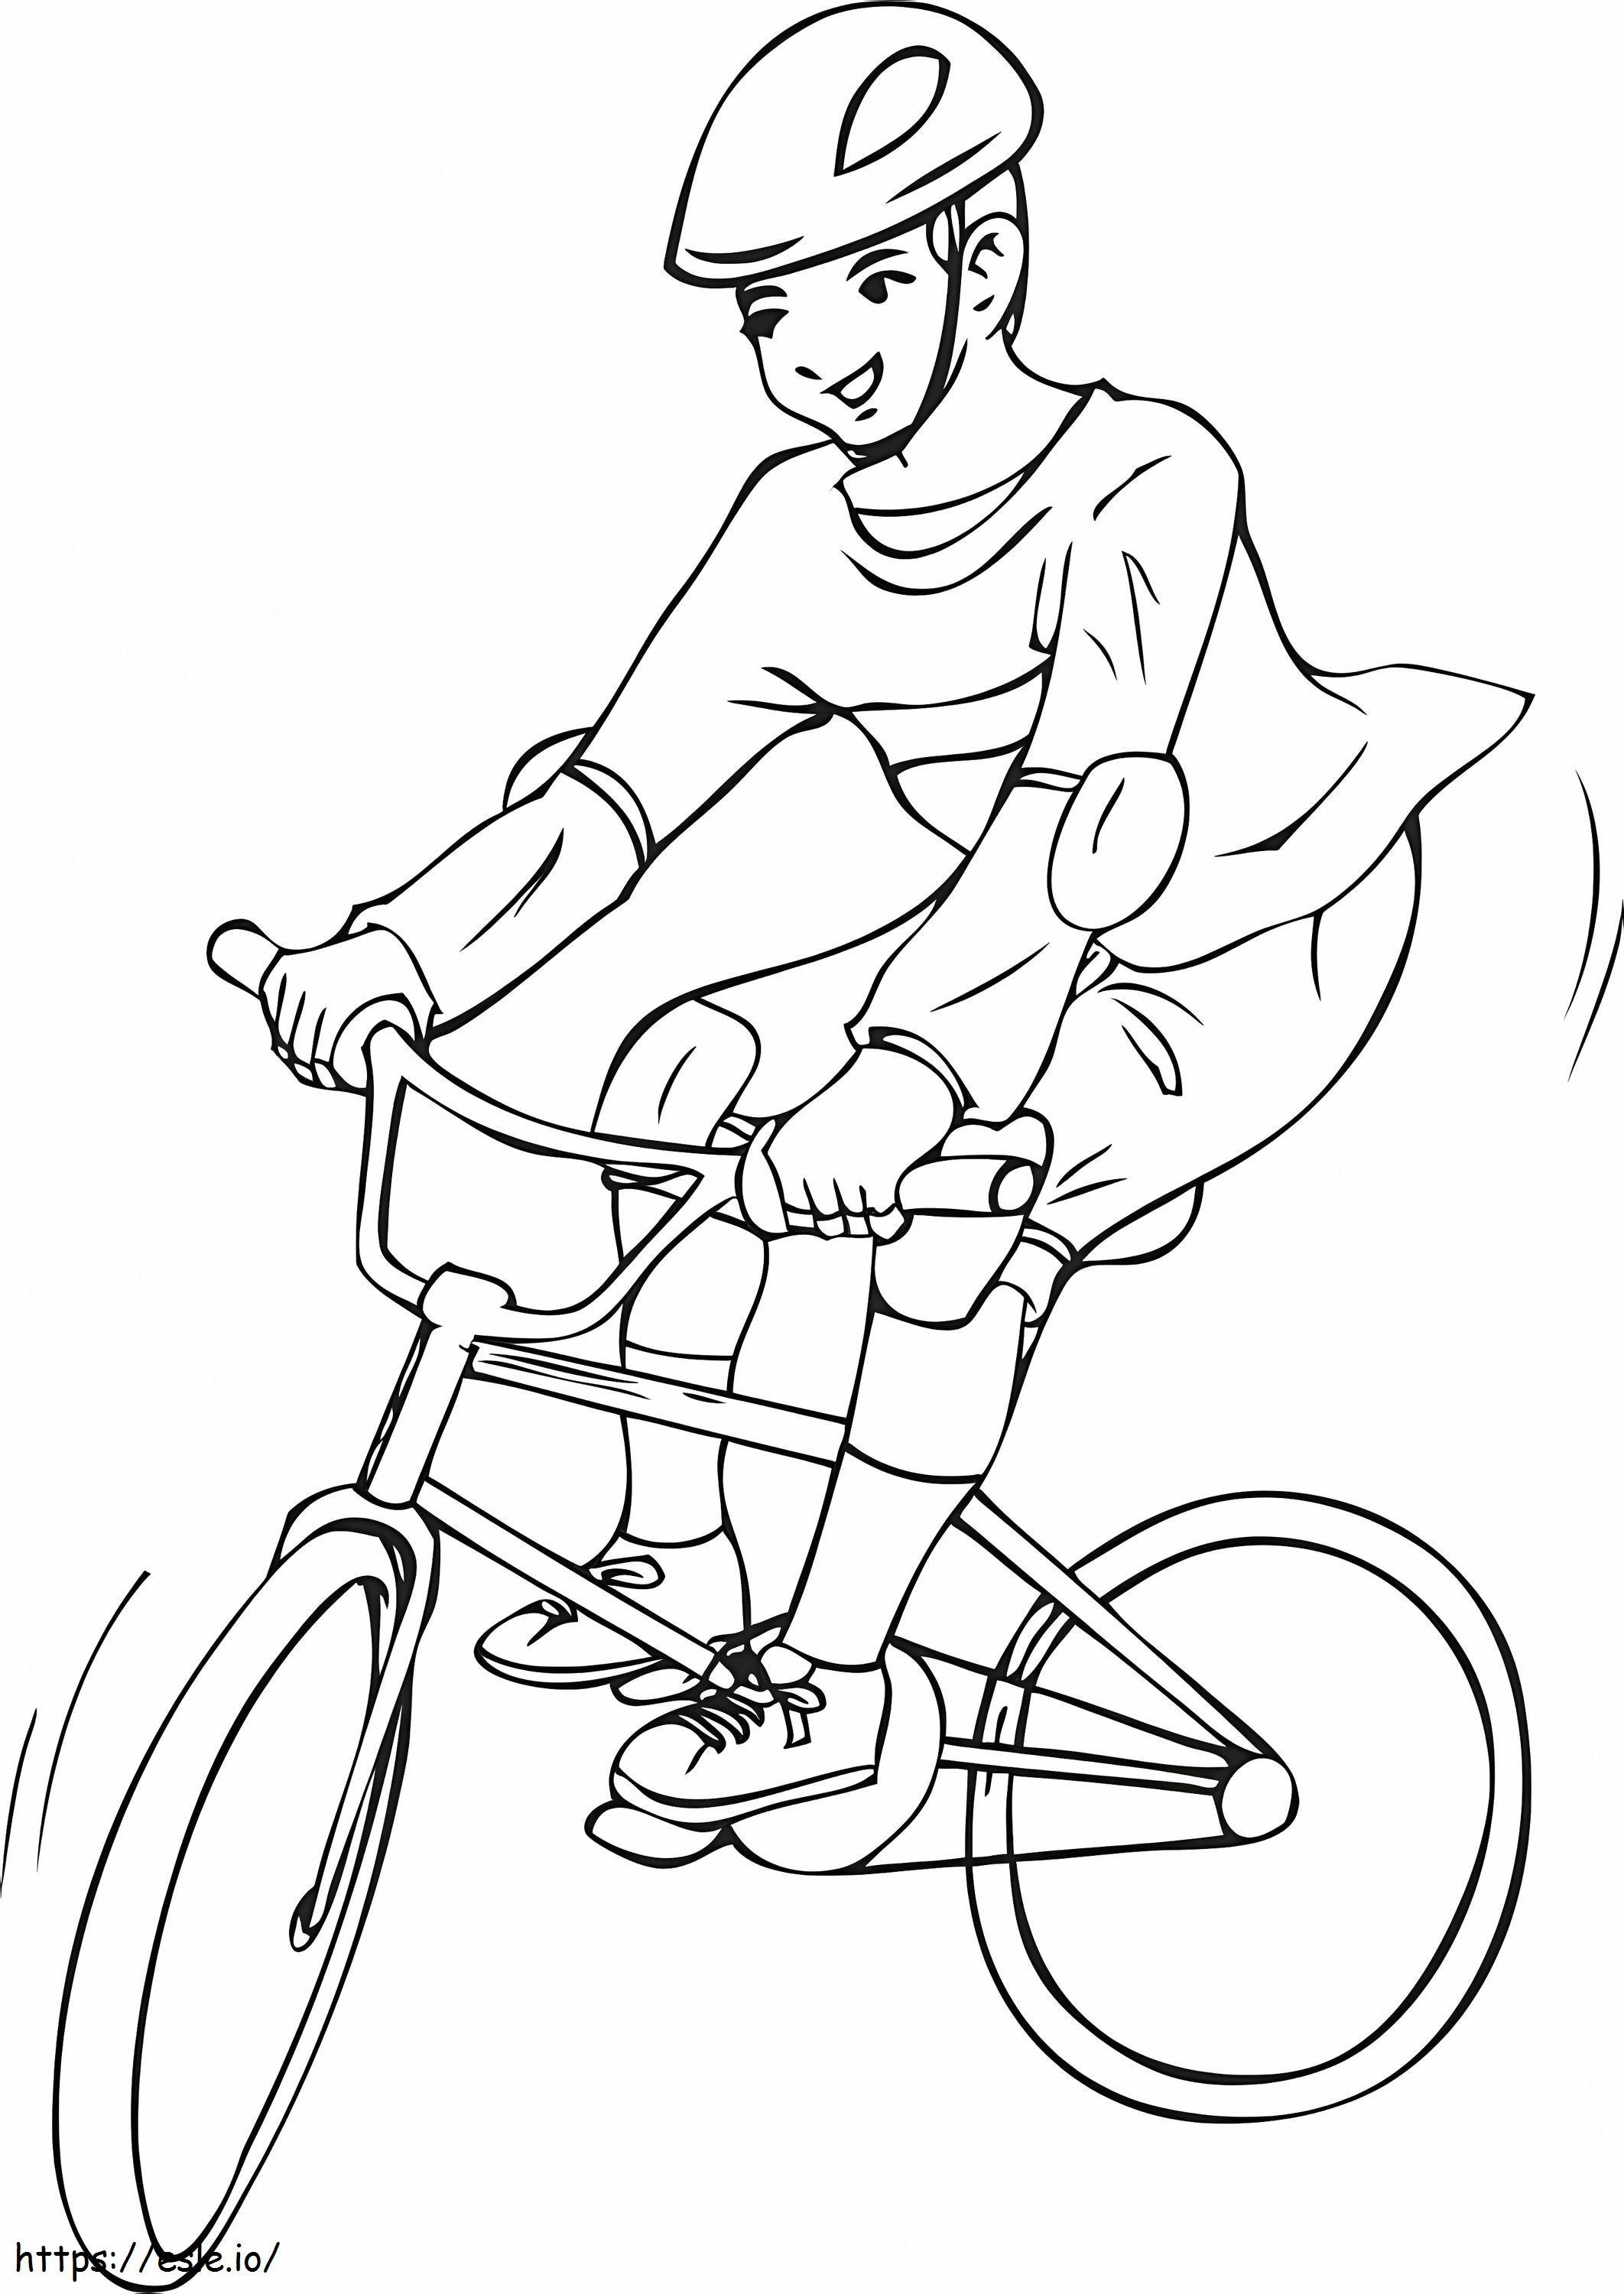 Ein Junge, der Fahrrad fährt ausmalbilder